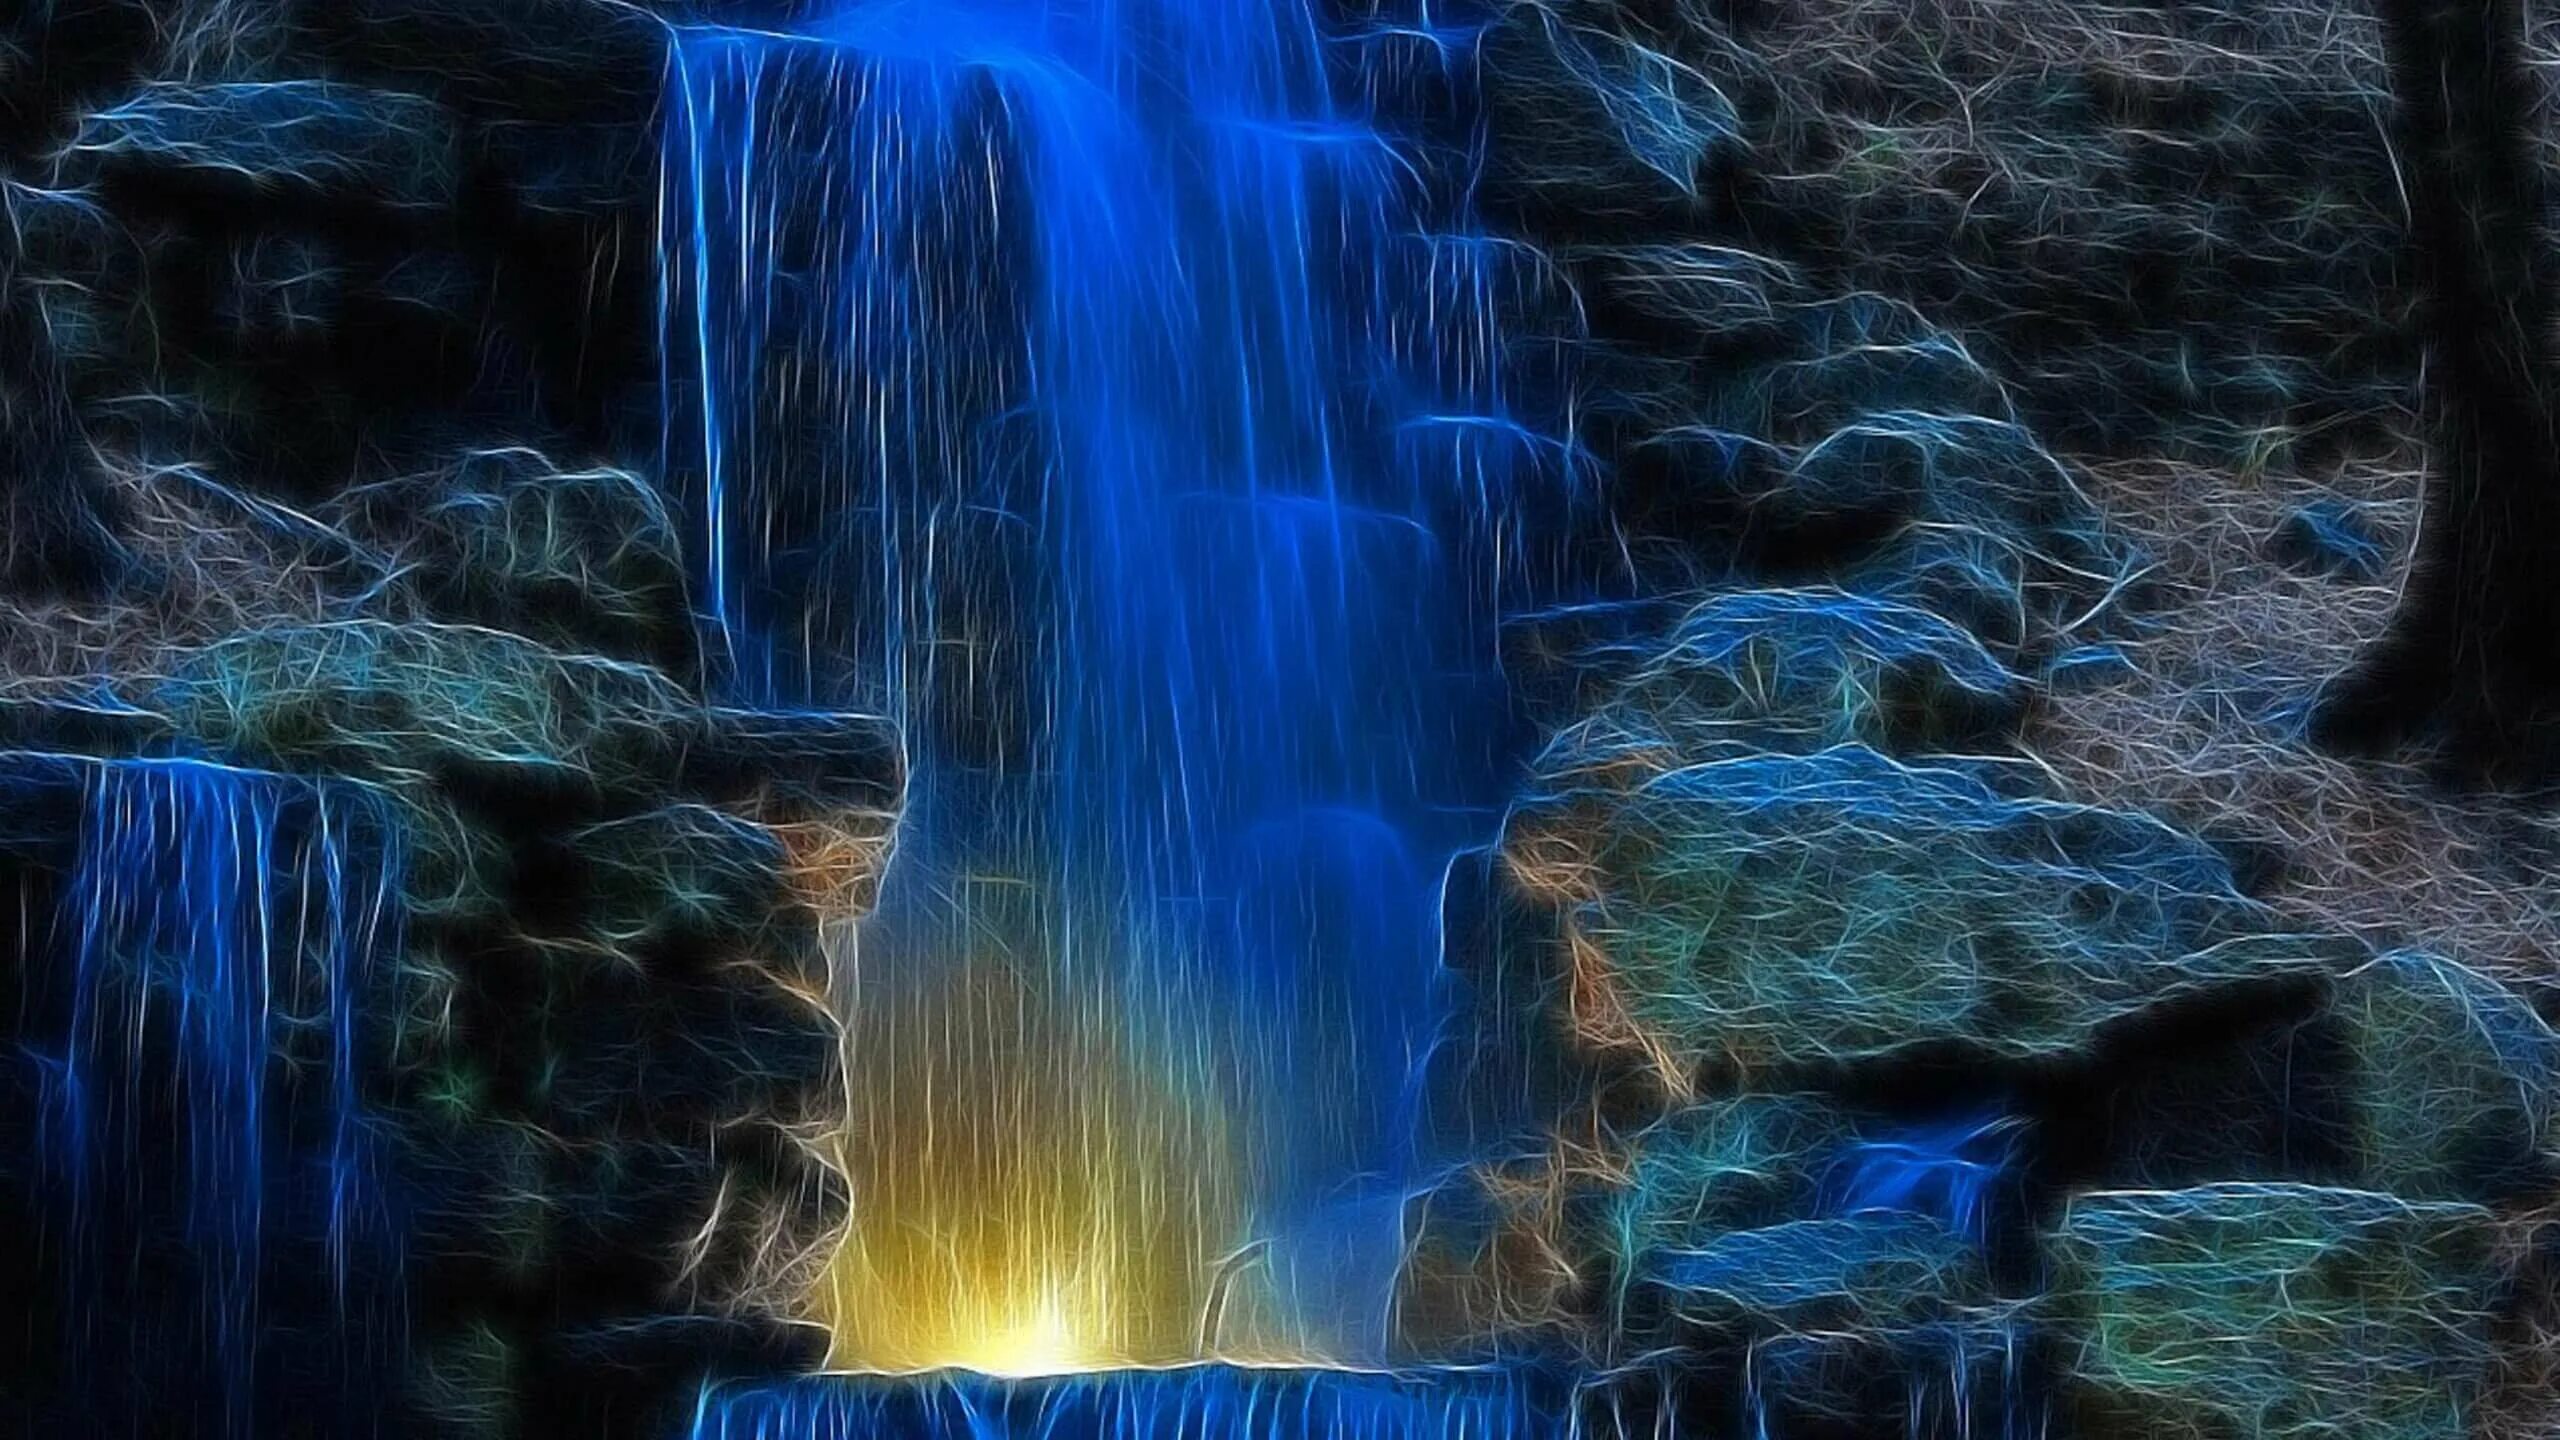 Обои для телефона живые двигающиеся. Красивые водопады. Живая природа водопады. Синий водопад. Живые водопады.